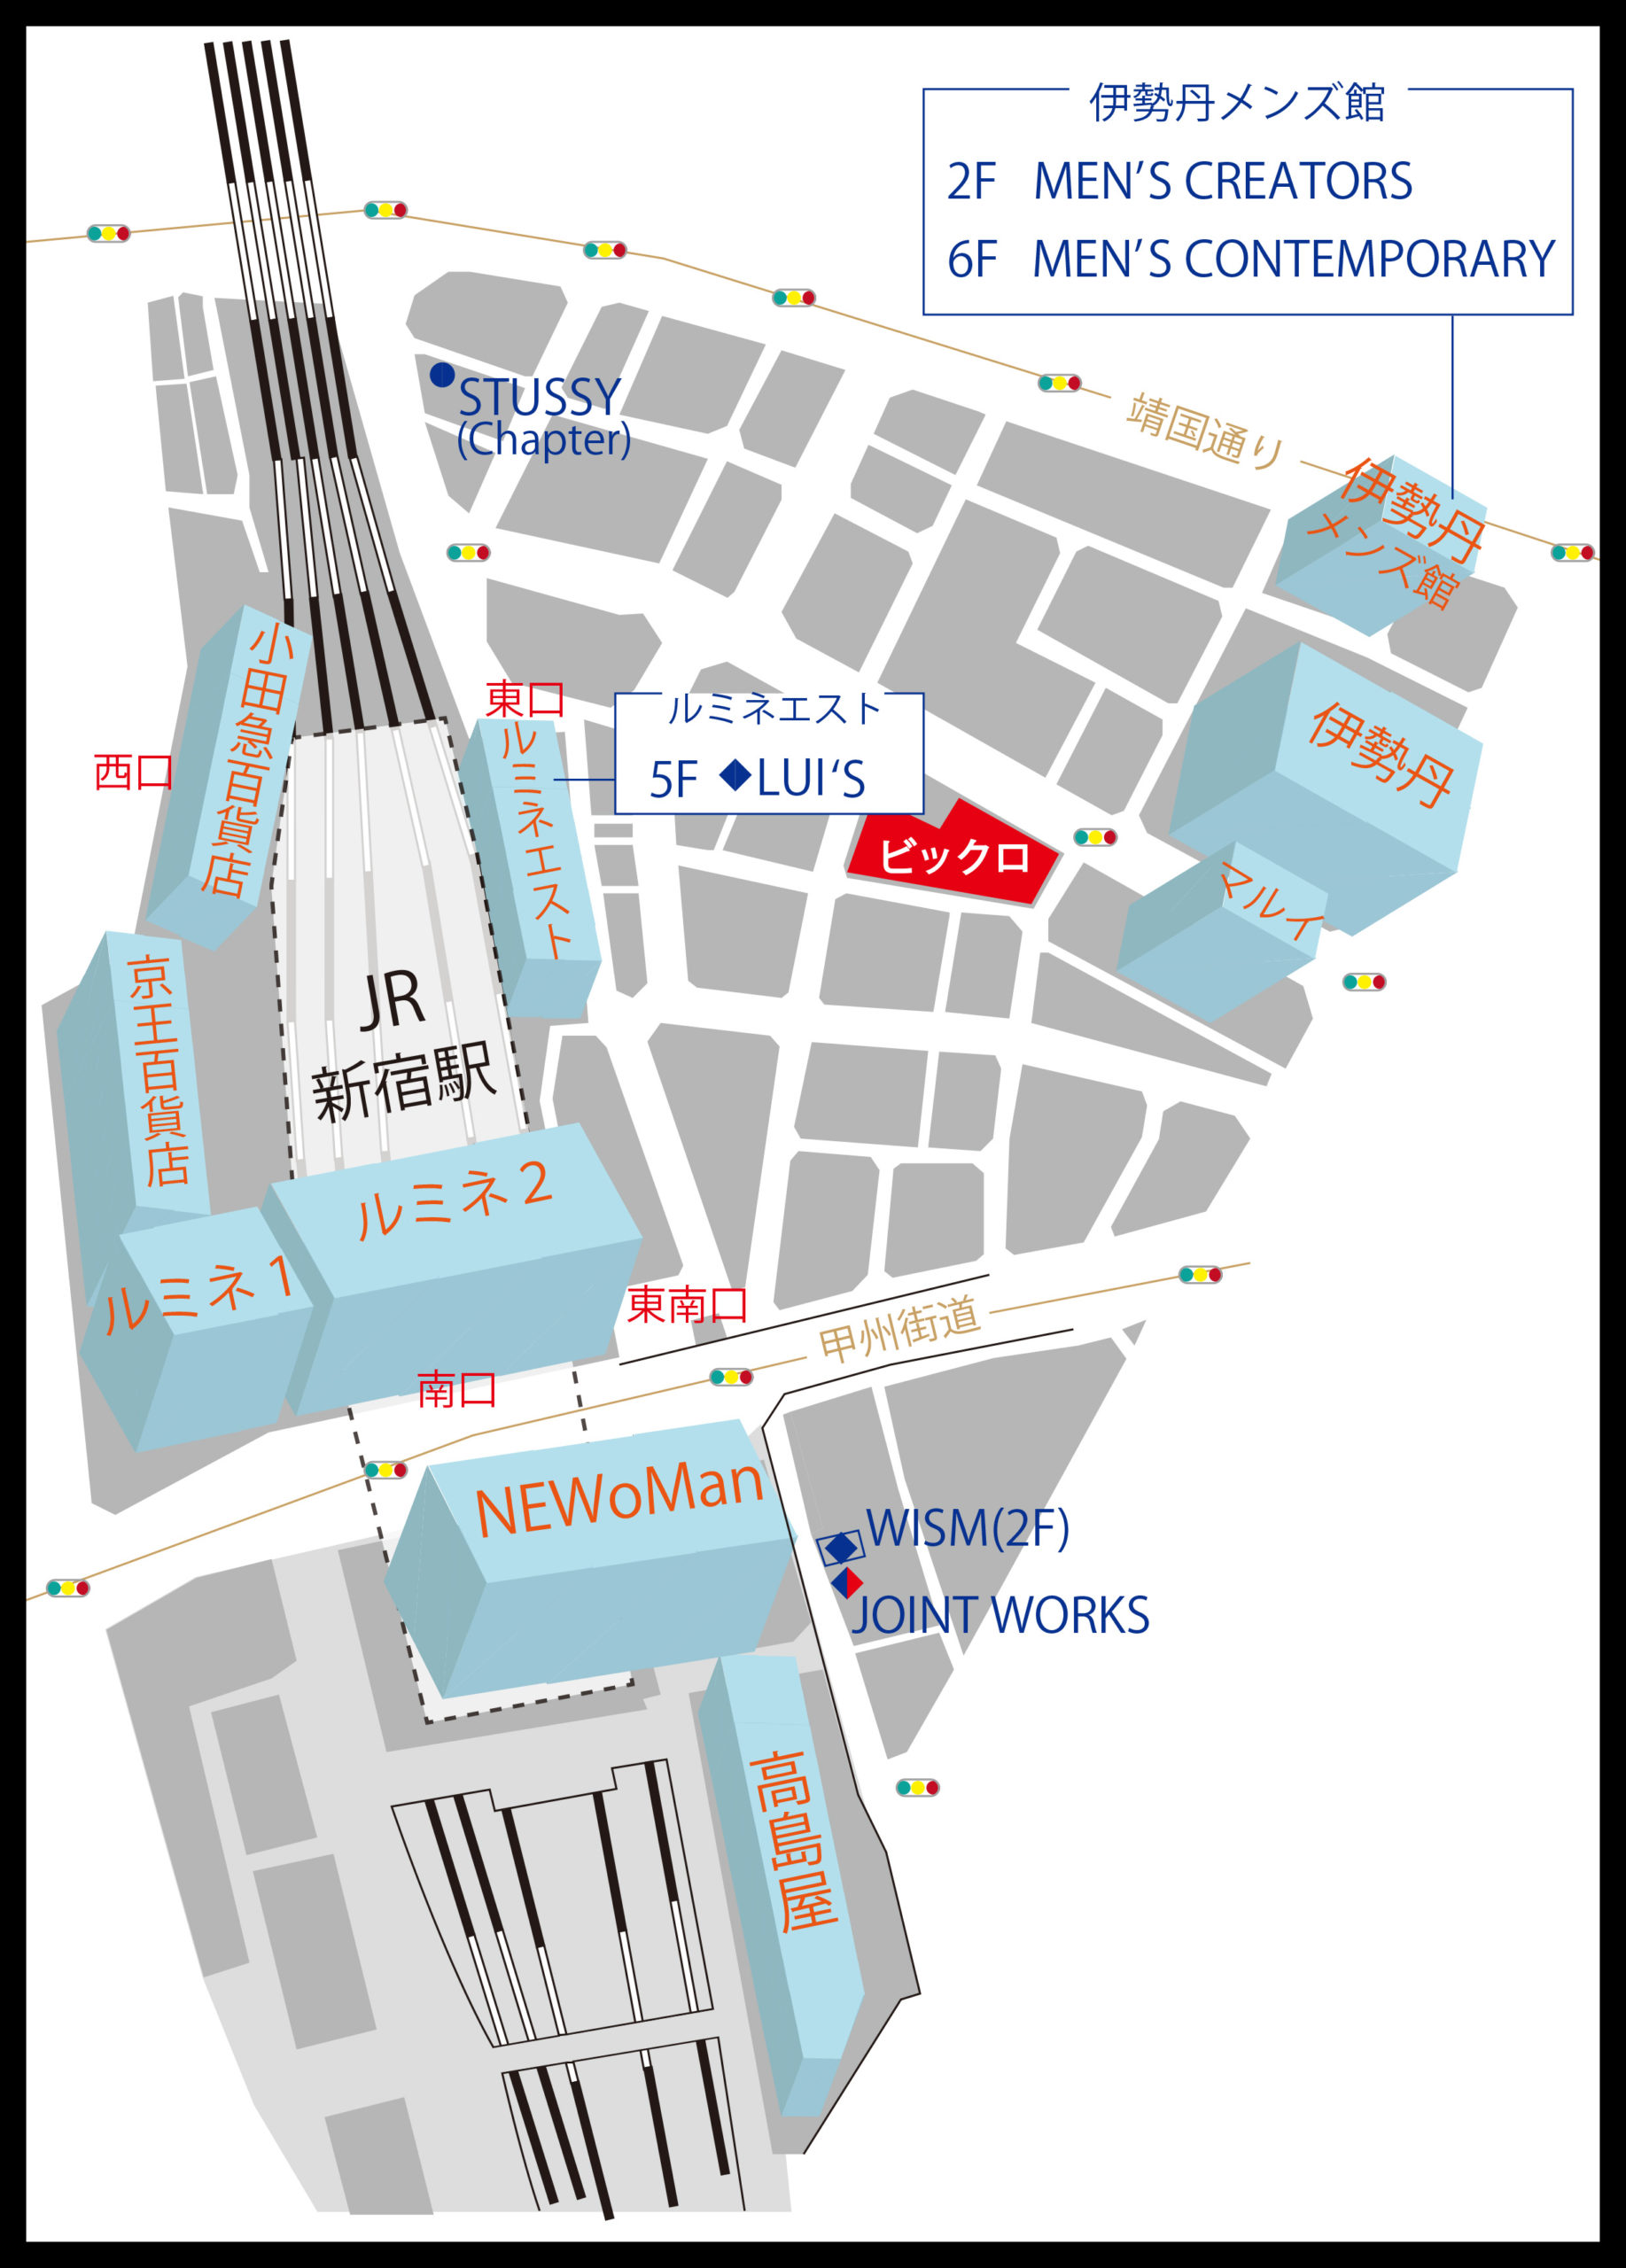 ストリートファッション好きなメンズにオススメのショップ 新宿エリア編 Fashion Map Tokyo